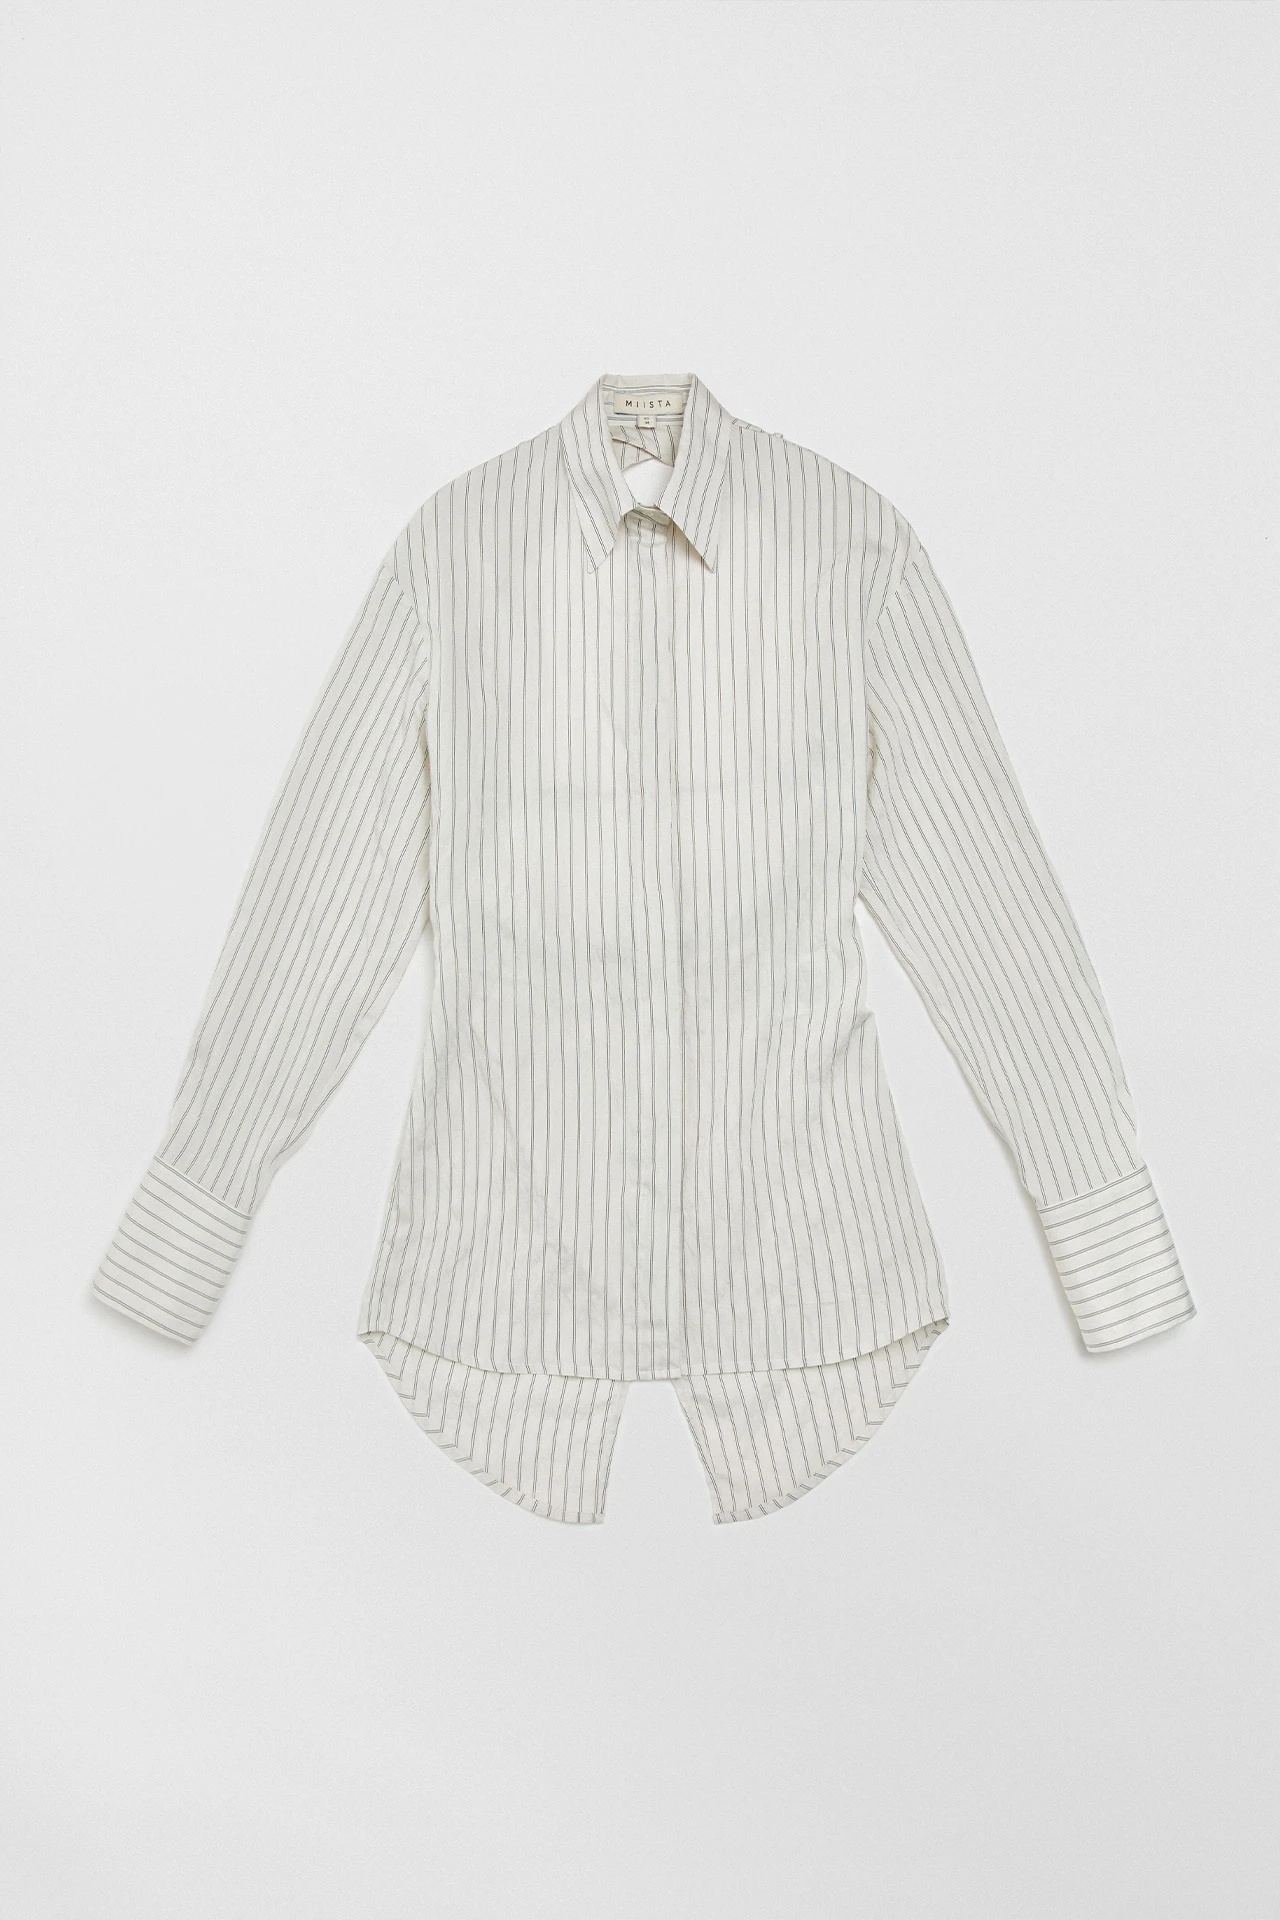 Miista-iryna-white-wide-lines-shirt-01